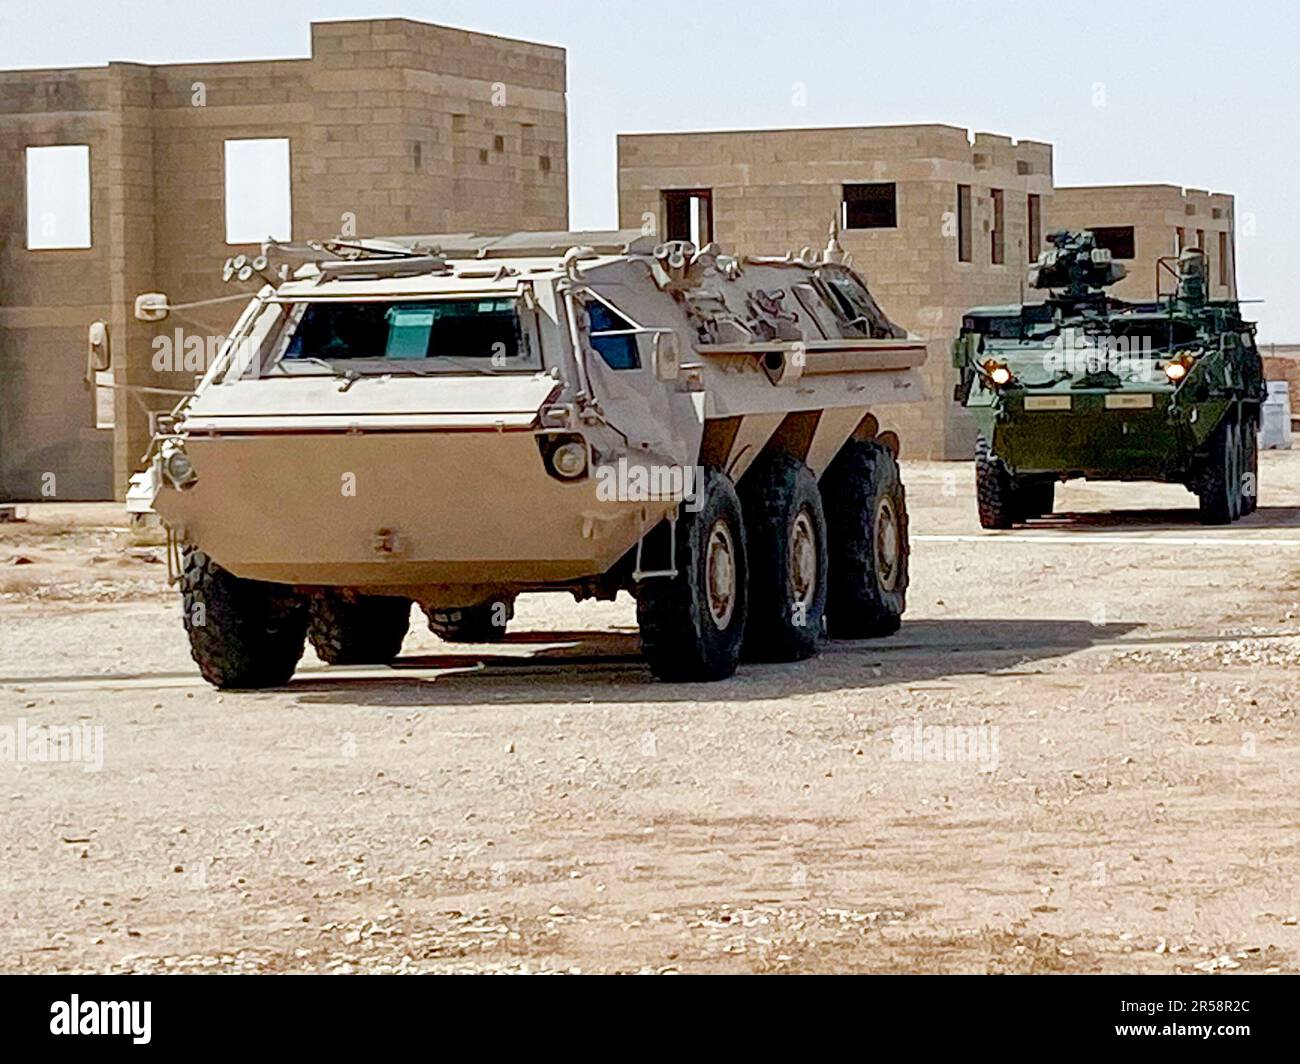 ÉTATS-UNIS Les soldats de l'armée et les soldats du Royaume d'Arabie saoudite ont mis en scène leurs M1135 véhicules nucléaires, biologiques, chimiques et de reconnaissance pour la partie d'entraînement chimique biologique, radiologique et nucléaire (CBRN) de l'exercice d'entraînement sur le terrain pour Eagle Resolve 23, 31 mai 2023, dans le Royaume d'Arabie saoudite. La formation CBRN renforce l'état de préparation et prépare les membres du service avec les compétences nécessaires pour réagir de manière appropriée dans un environnement contaminé tout en offrant une aide médicale aux victimes touchées. Eagle Resolve est un exercice conjoint de tous les domaines qui améliore l'interopérabilité sur terre, dans le Banque D'Images